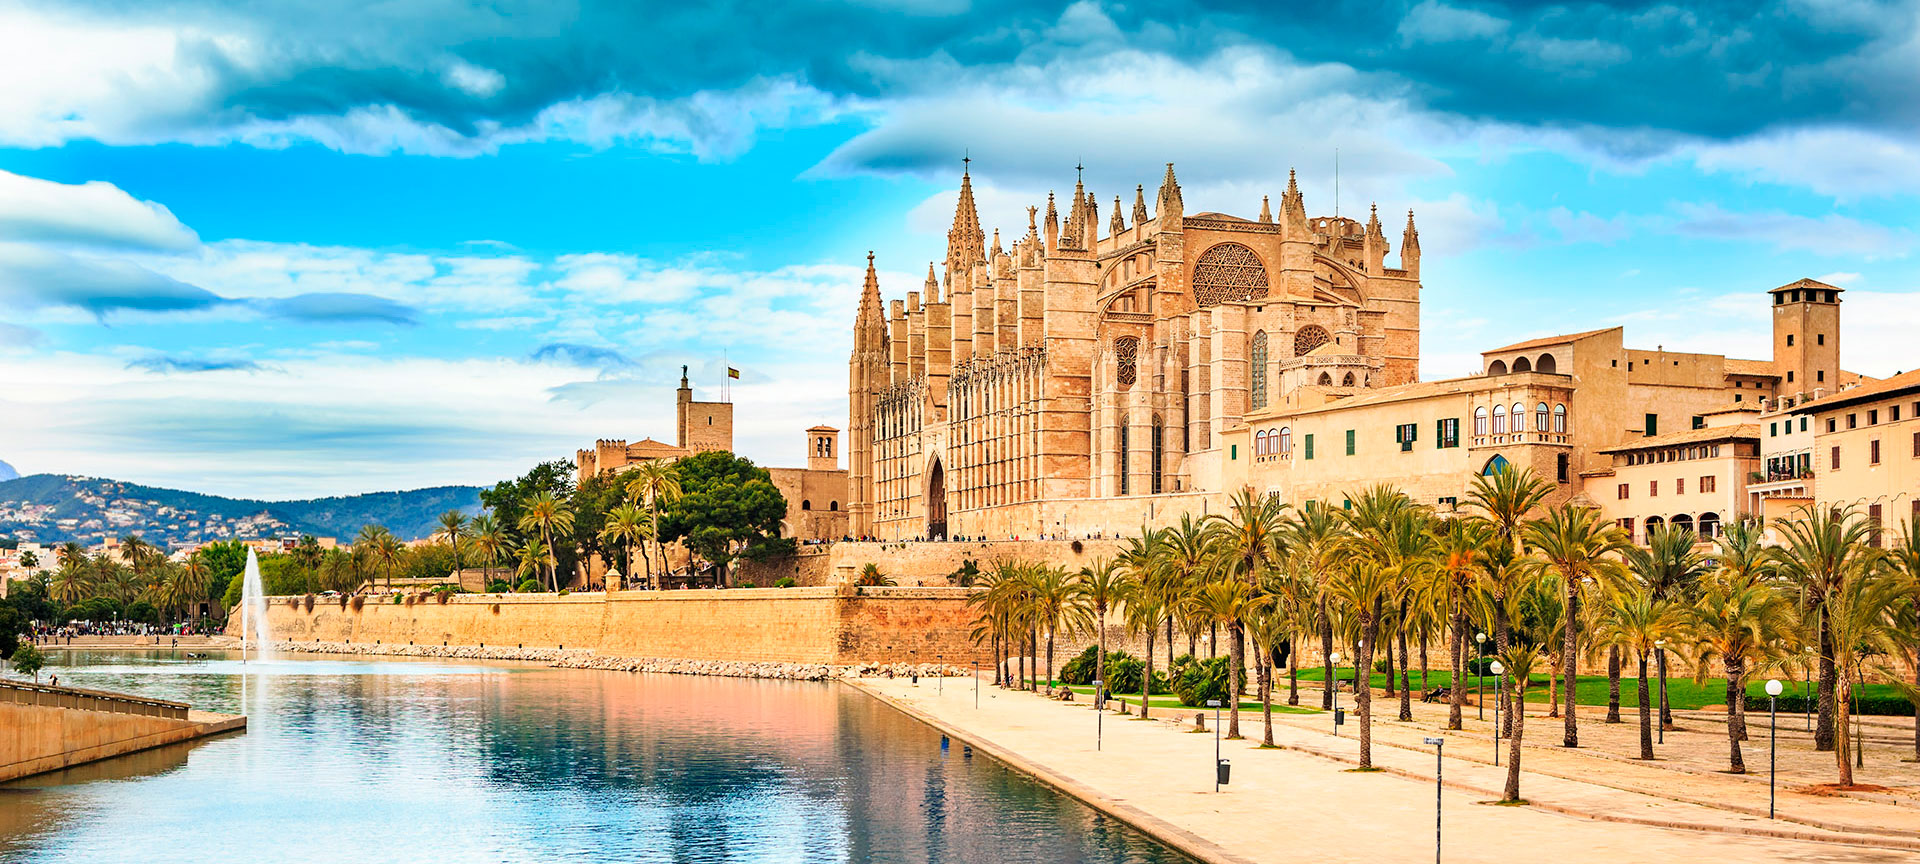 Ofertas hoteles y viajes baratos en Mallorca